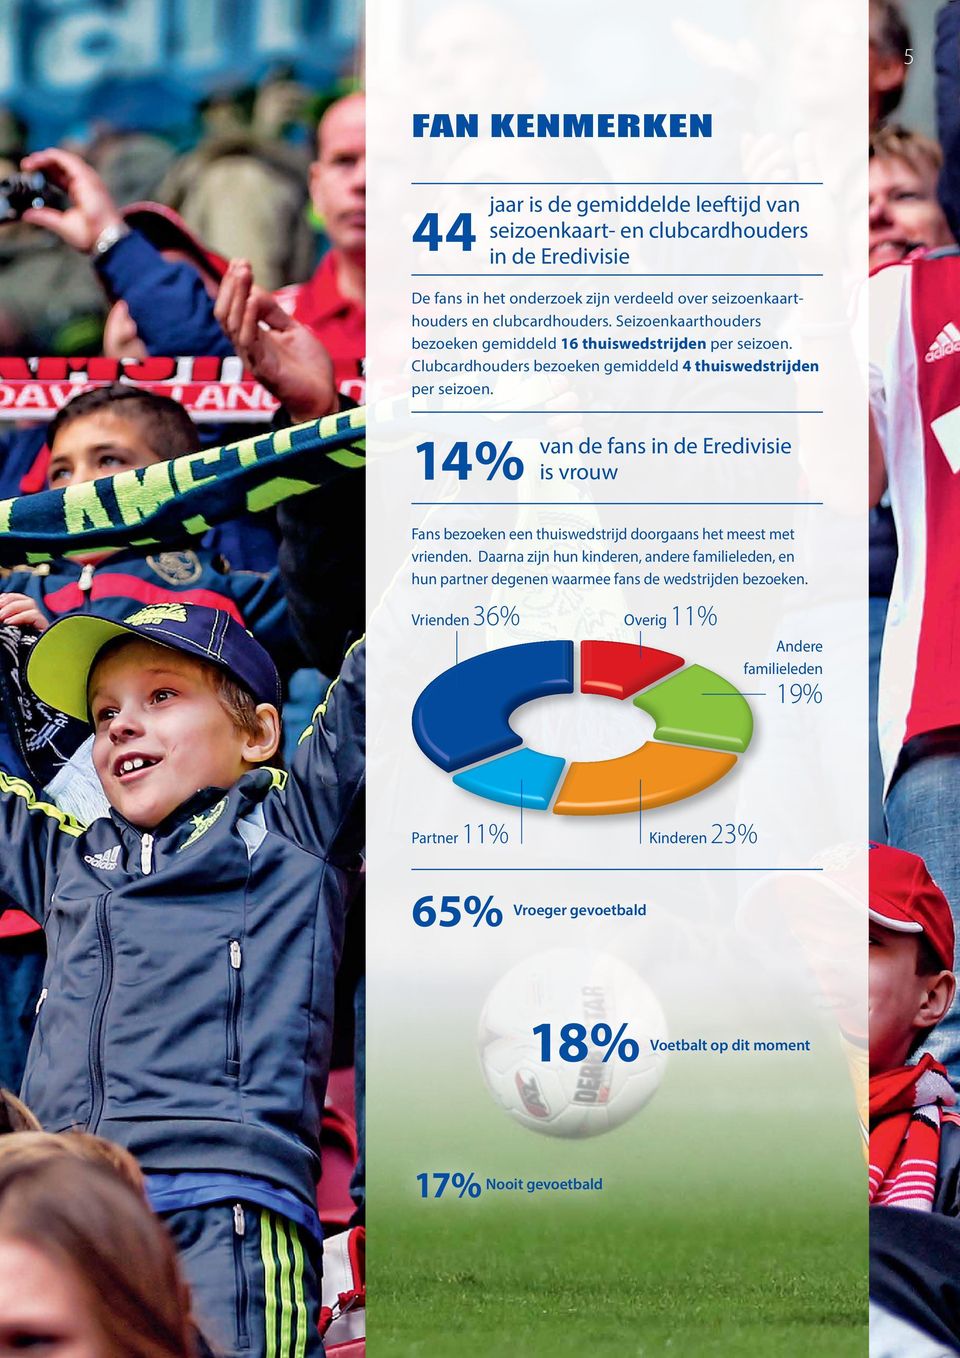 14% van de fans in de Eredivisie is vrouw Fans bezoeken een thuiswedstrijd doorgaans het meest met vrienden.